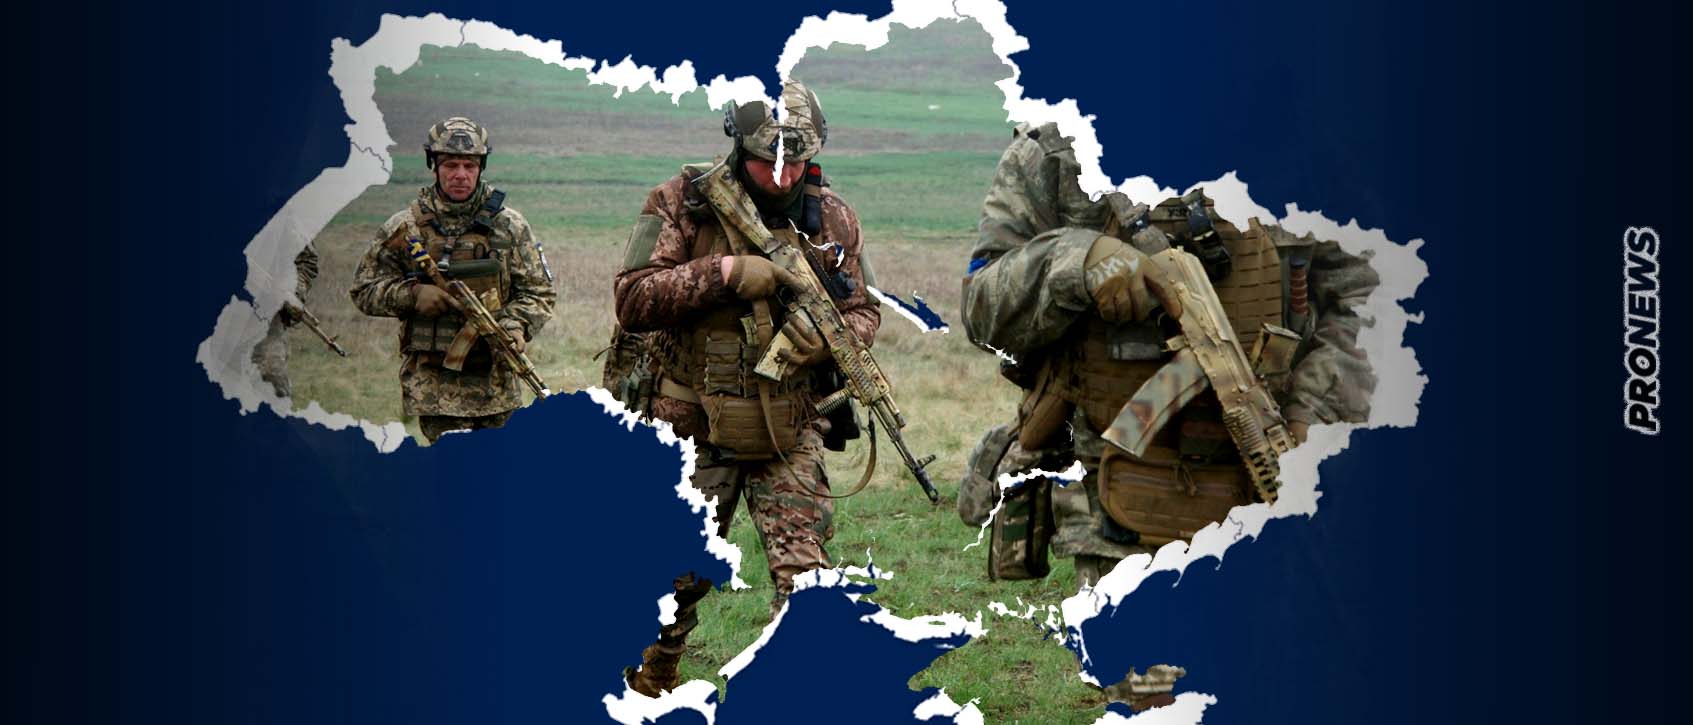 Ουκρανοί: «Είμαστε έτοιμοι για αντεπίθεση κατά των Ρώσων, περιμένουμε εντολές» – «Τους παραδώσαμε όλα τα όπλα» λέει το ΝΑΤΟ